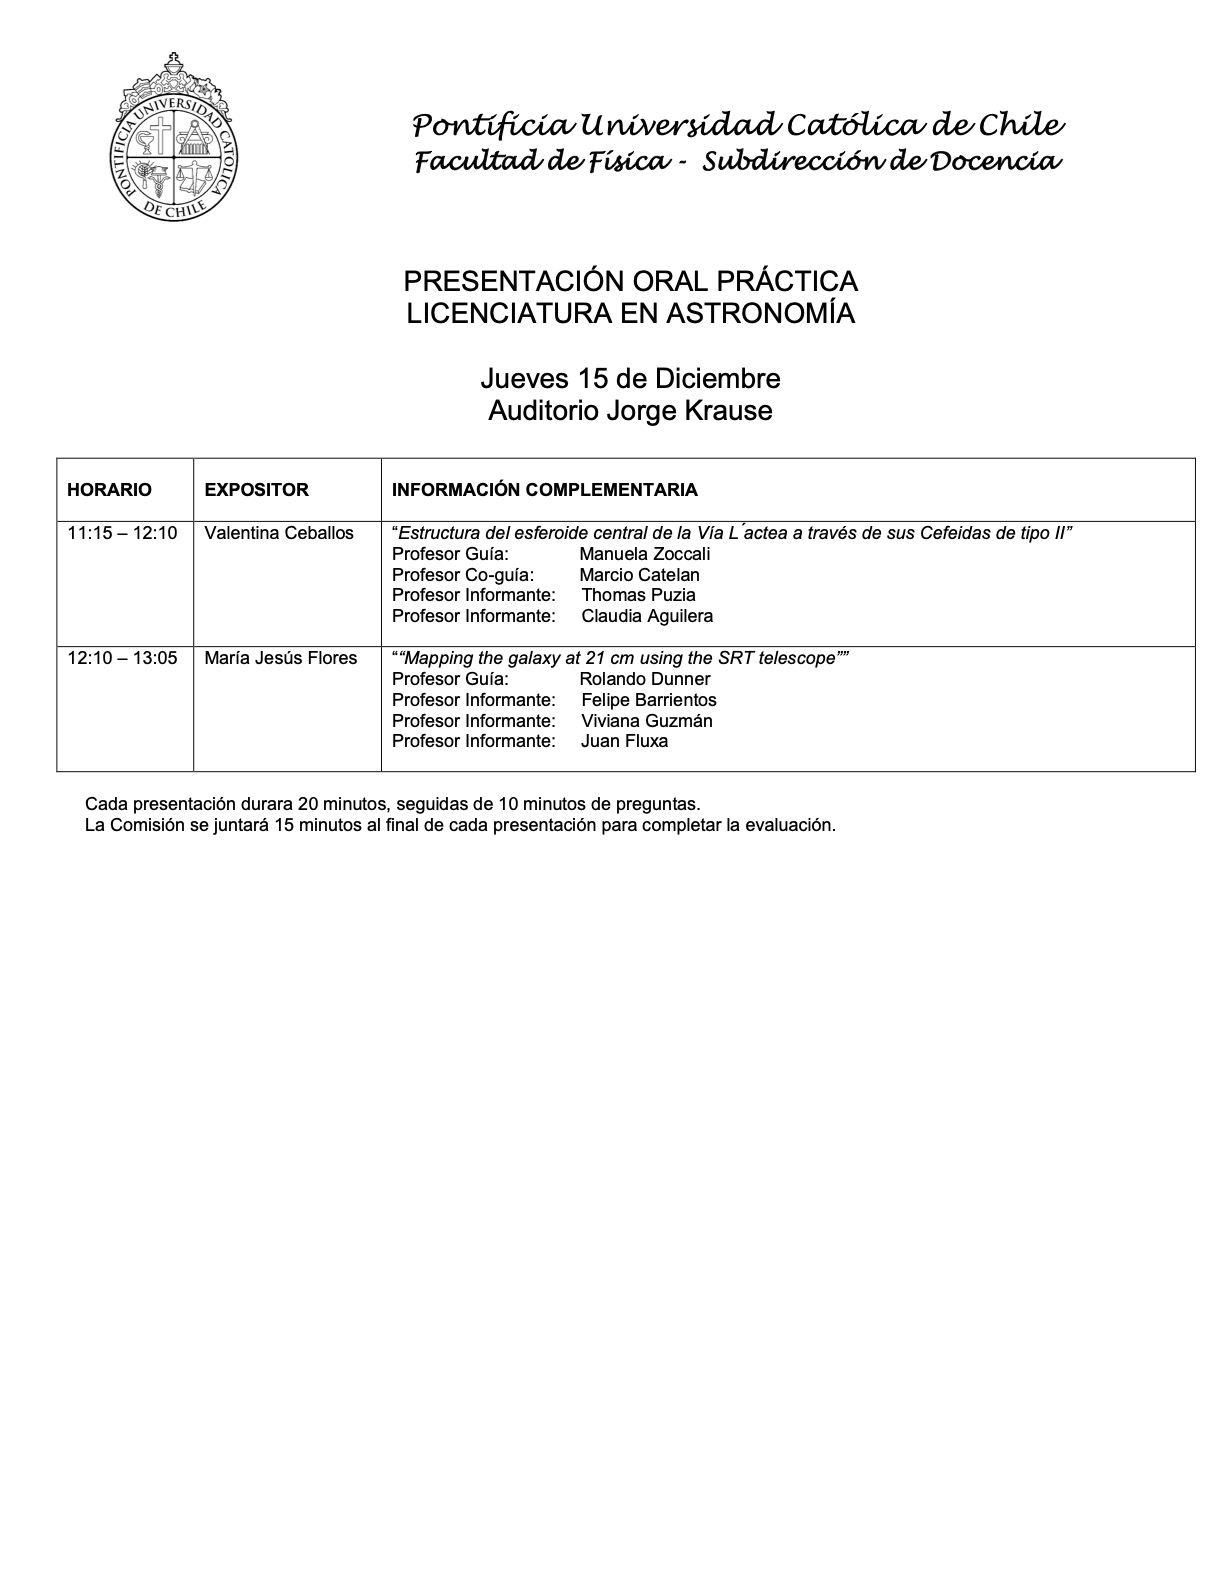 Calendario Practicas de Licenciatura IA 22022 15.12.2022 publicar